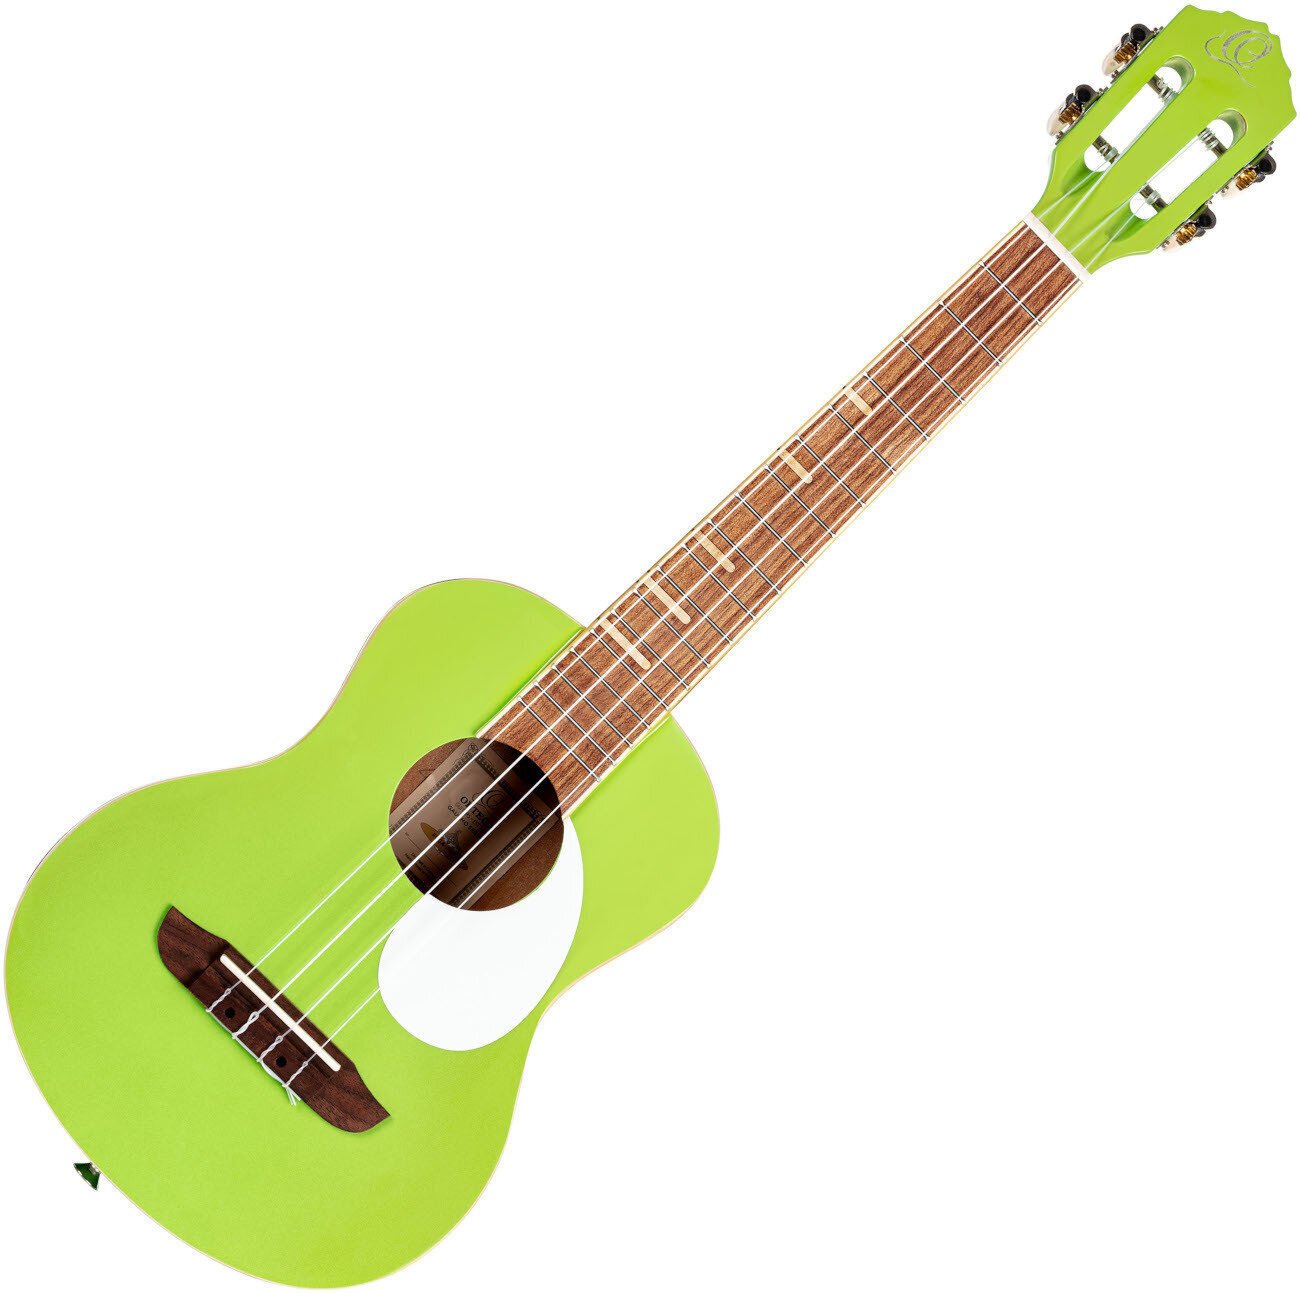 Tenor ukulele Ortega RUGA-GAP Tenor ukulele Green